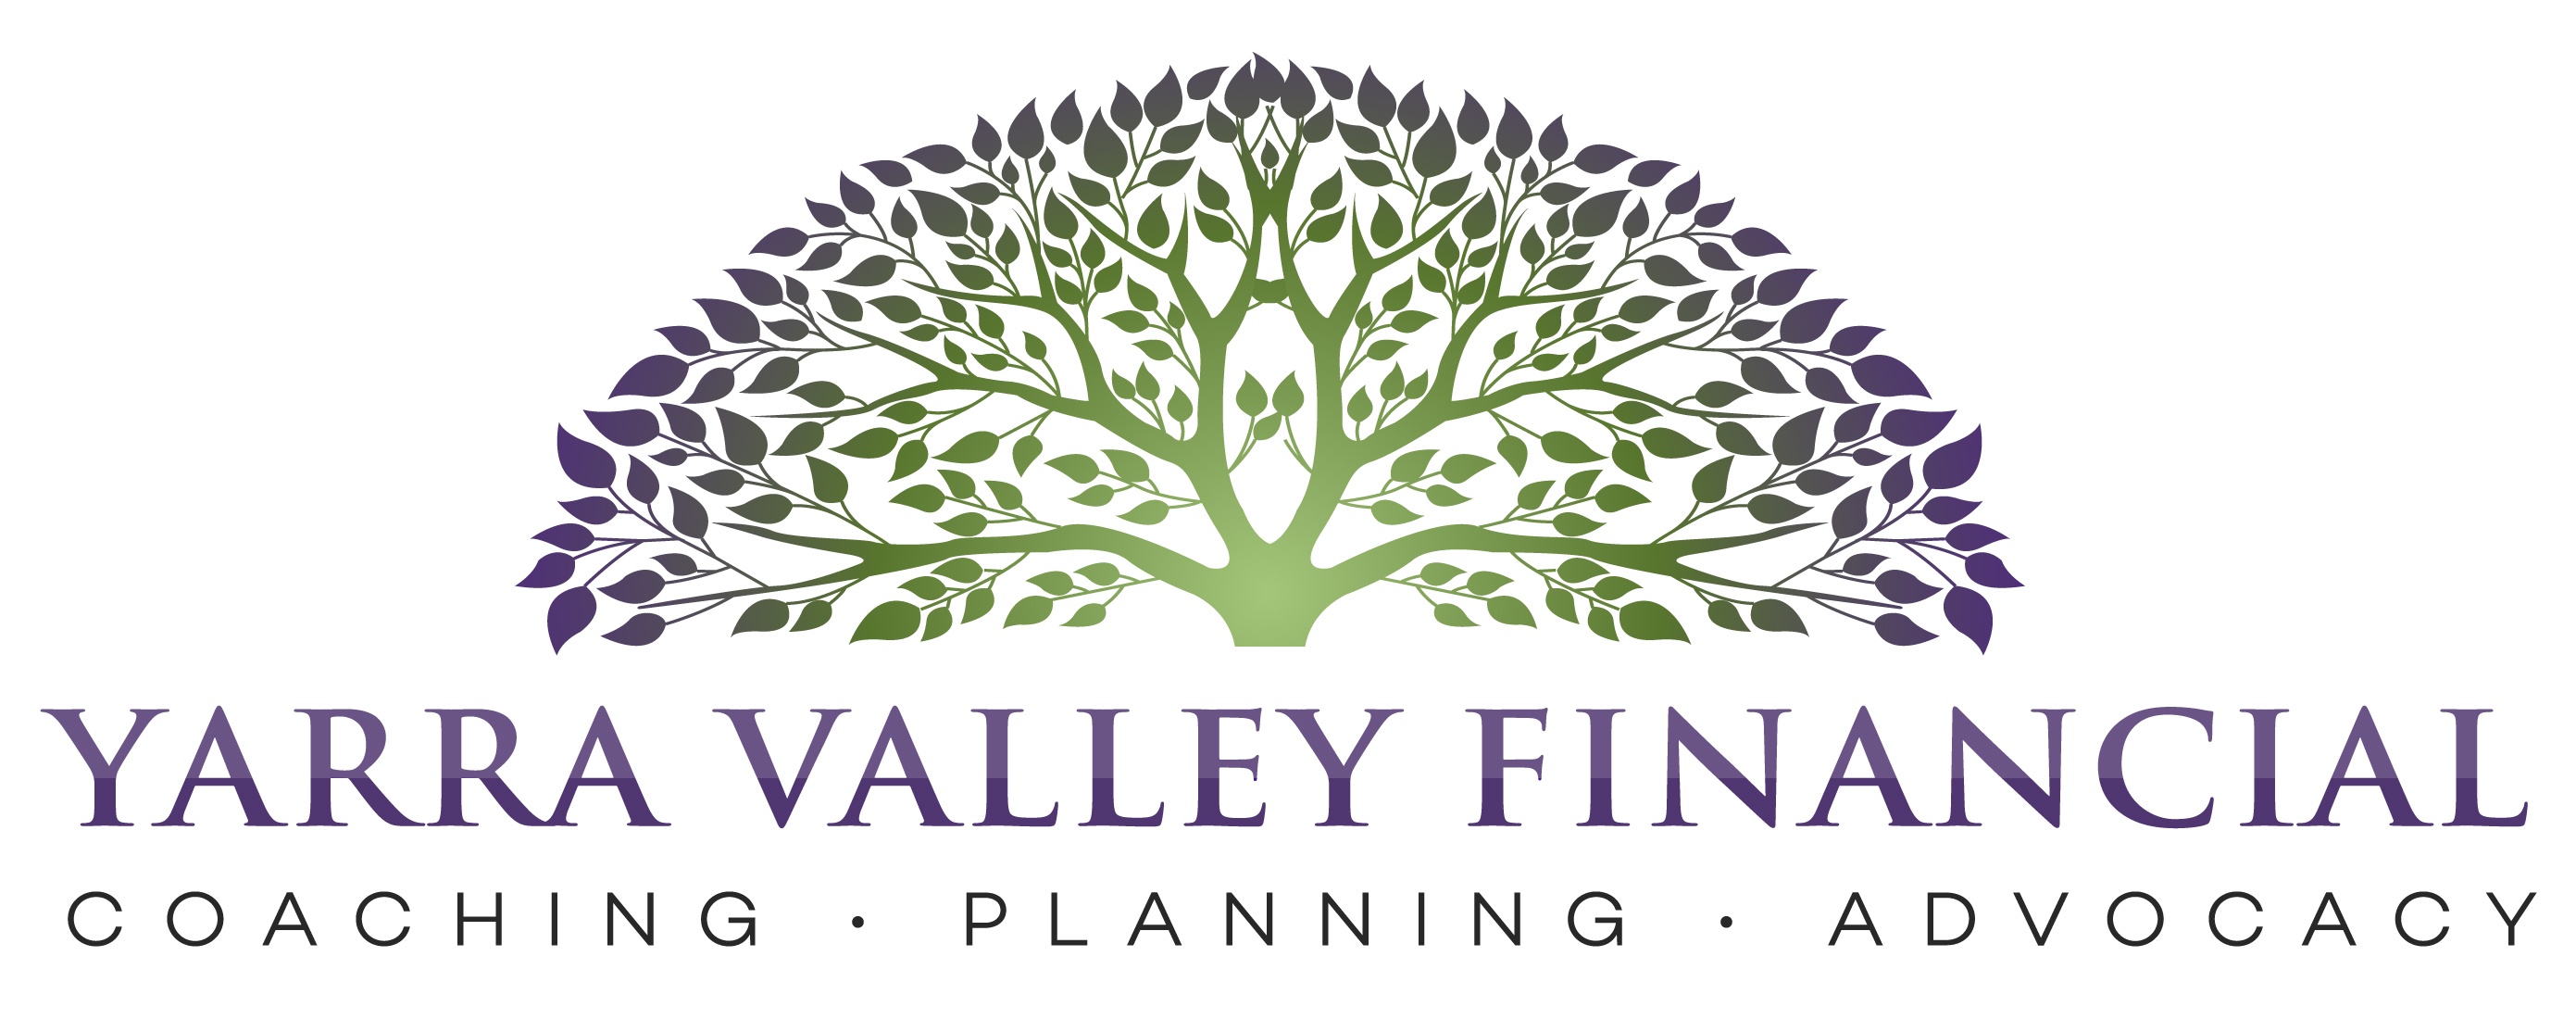 Yarra Valley Financial